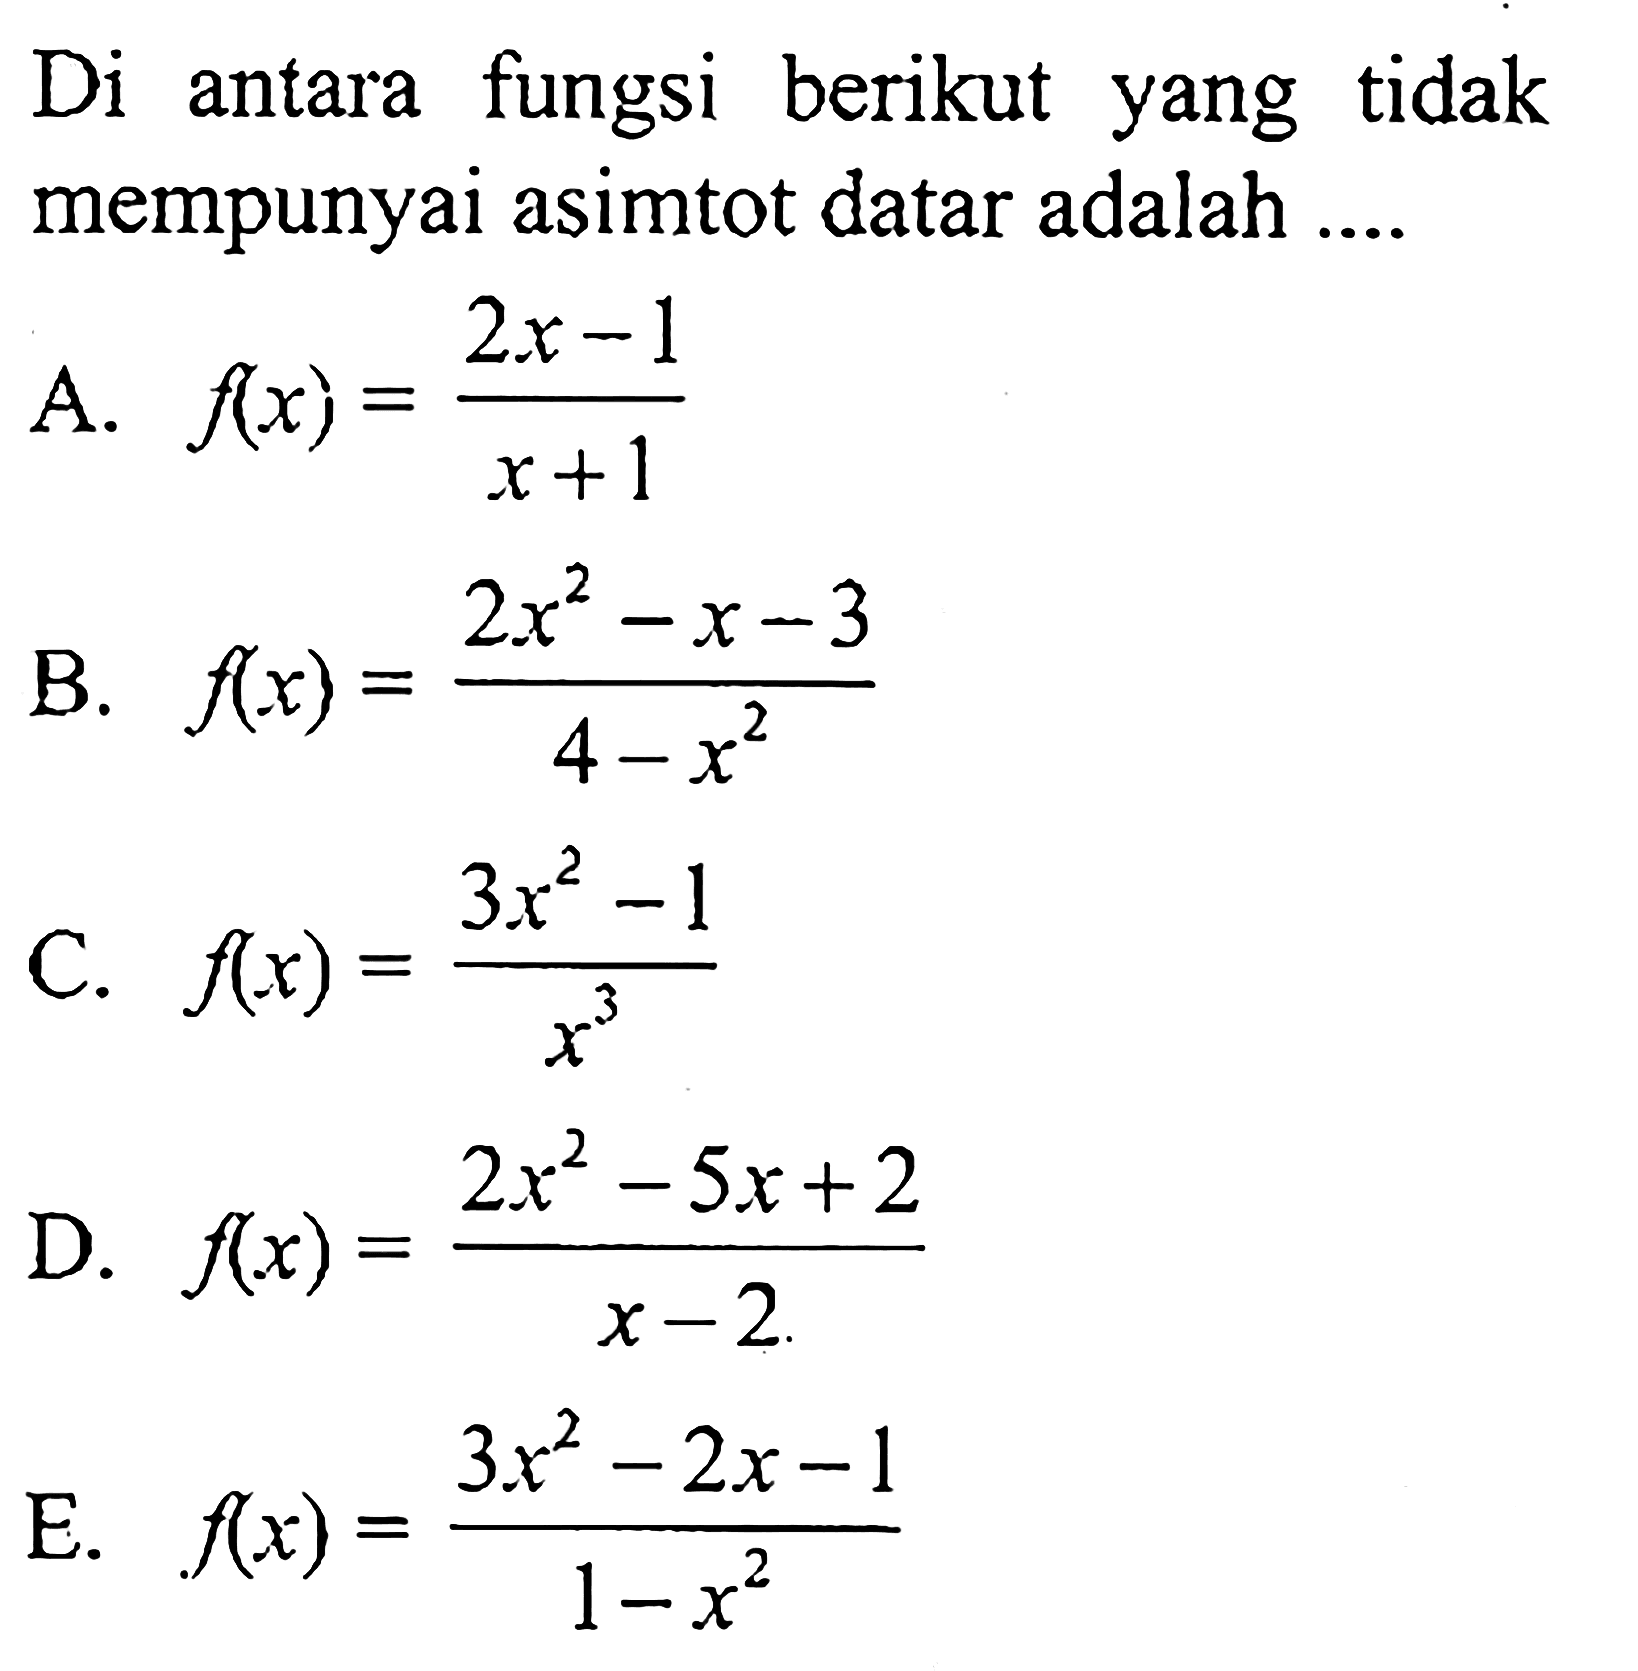 Di antara fungsi berikut yang tidak mempunyai asimtot datar adalah A. f(x) = (2x - 1)/(x + 1) B. f(x) = (2x^2 - x - 3)/(4 - x^2) C. f(x) = (3x^2 -1)/x^3 D. f(x) = (2x^2 - 5x + 2)/(x - 2) E. f(x) = (3x^2 - 2x - 1)/(1 - x^2)